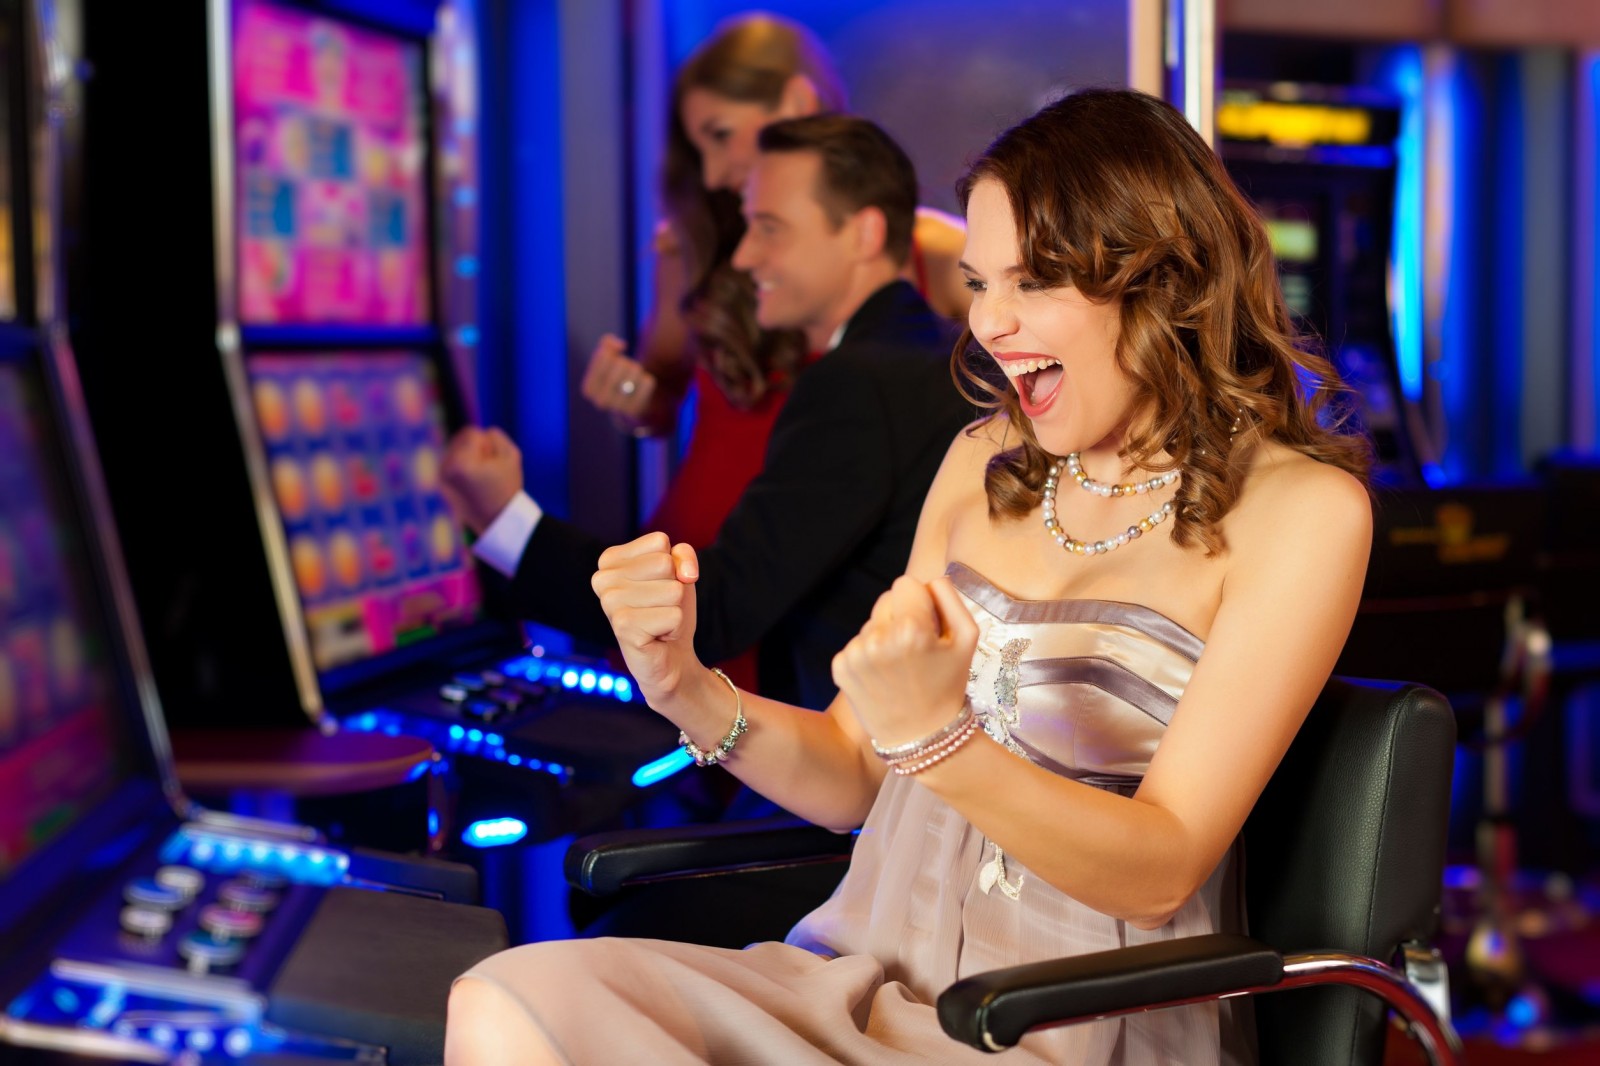 Как выбрать лучшее онлайн-казино?